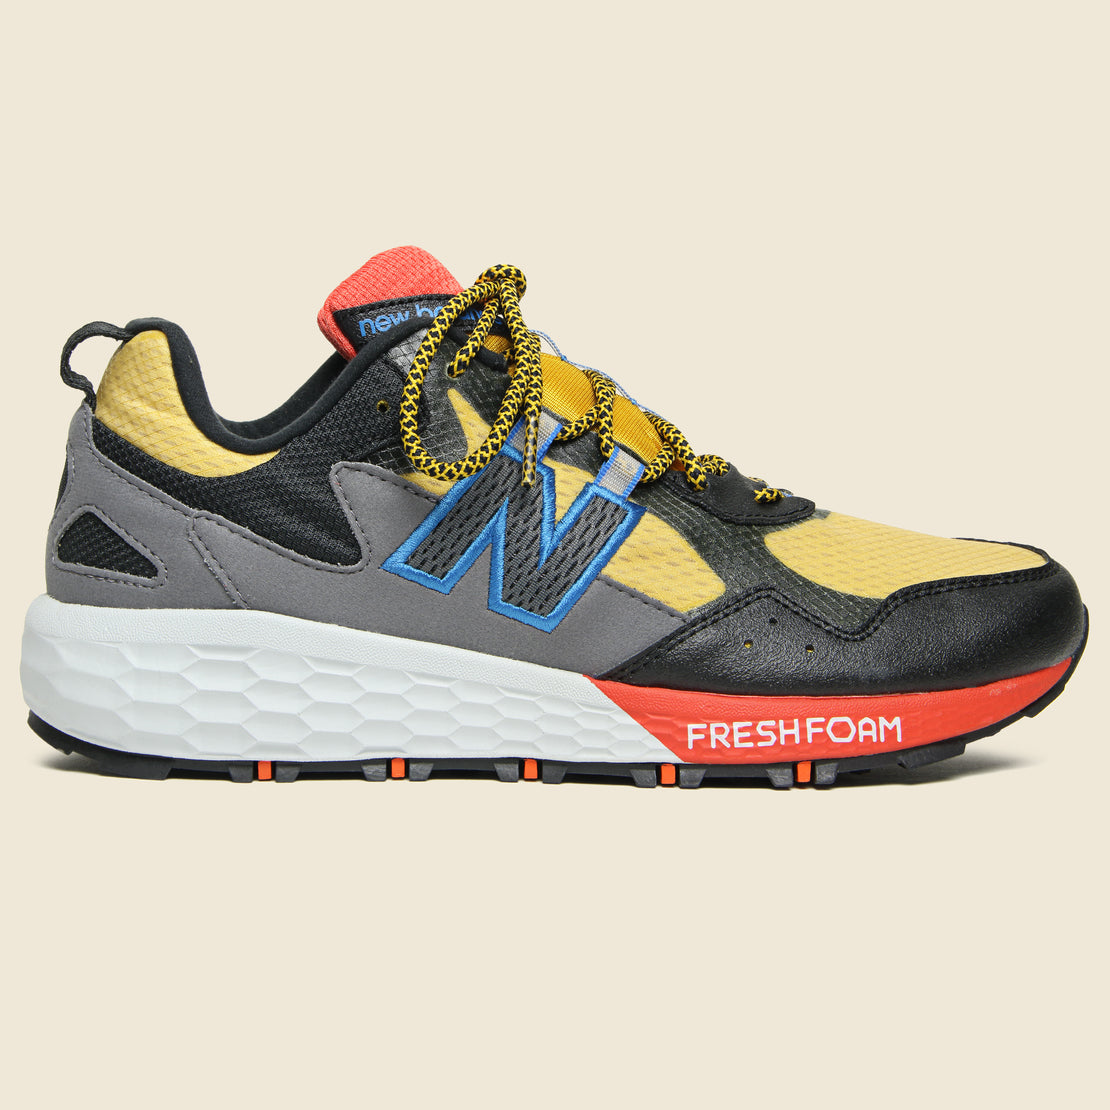 New Balance Fresh Foam Crag V2 Sneaker - Gold/Black/Red